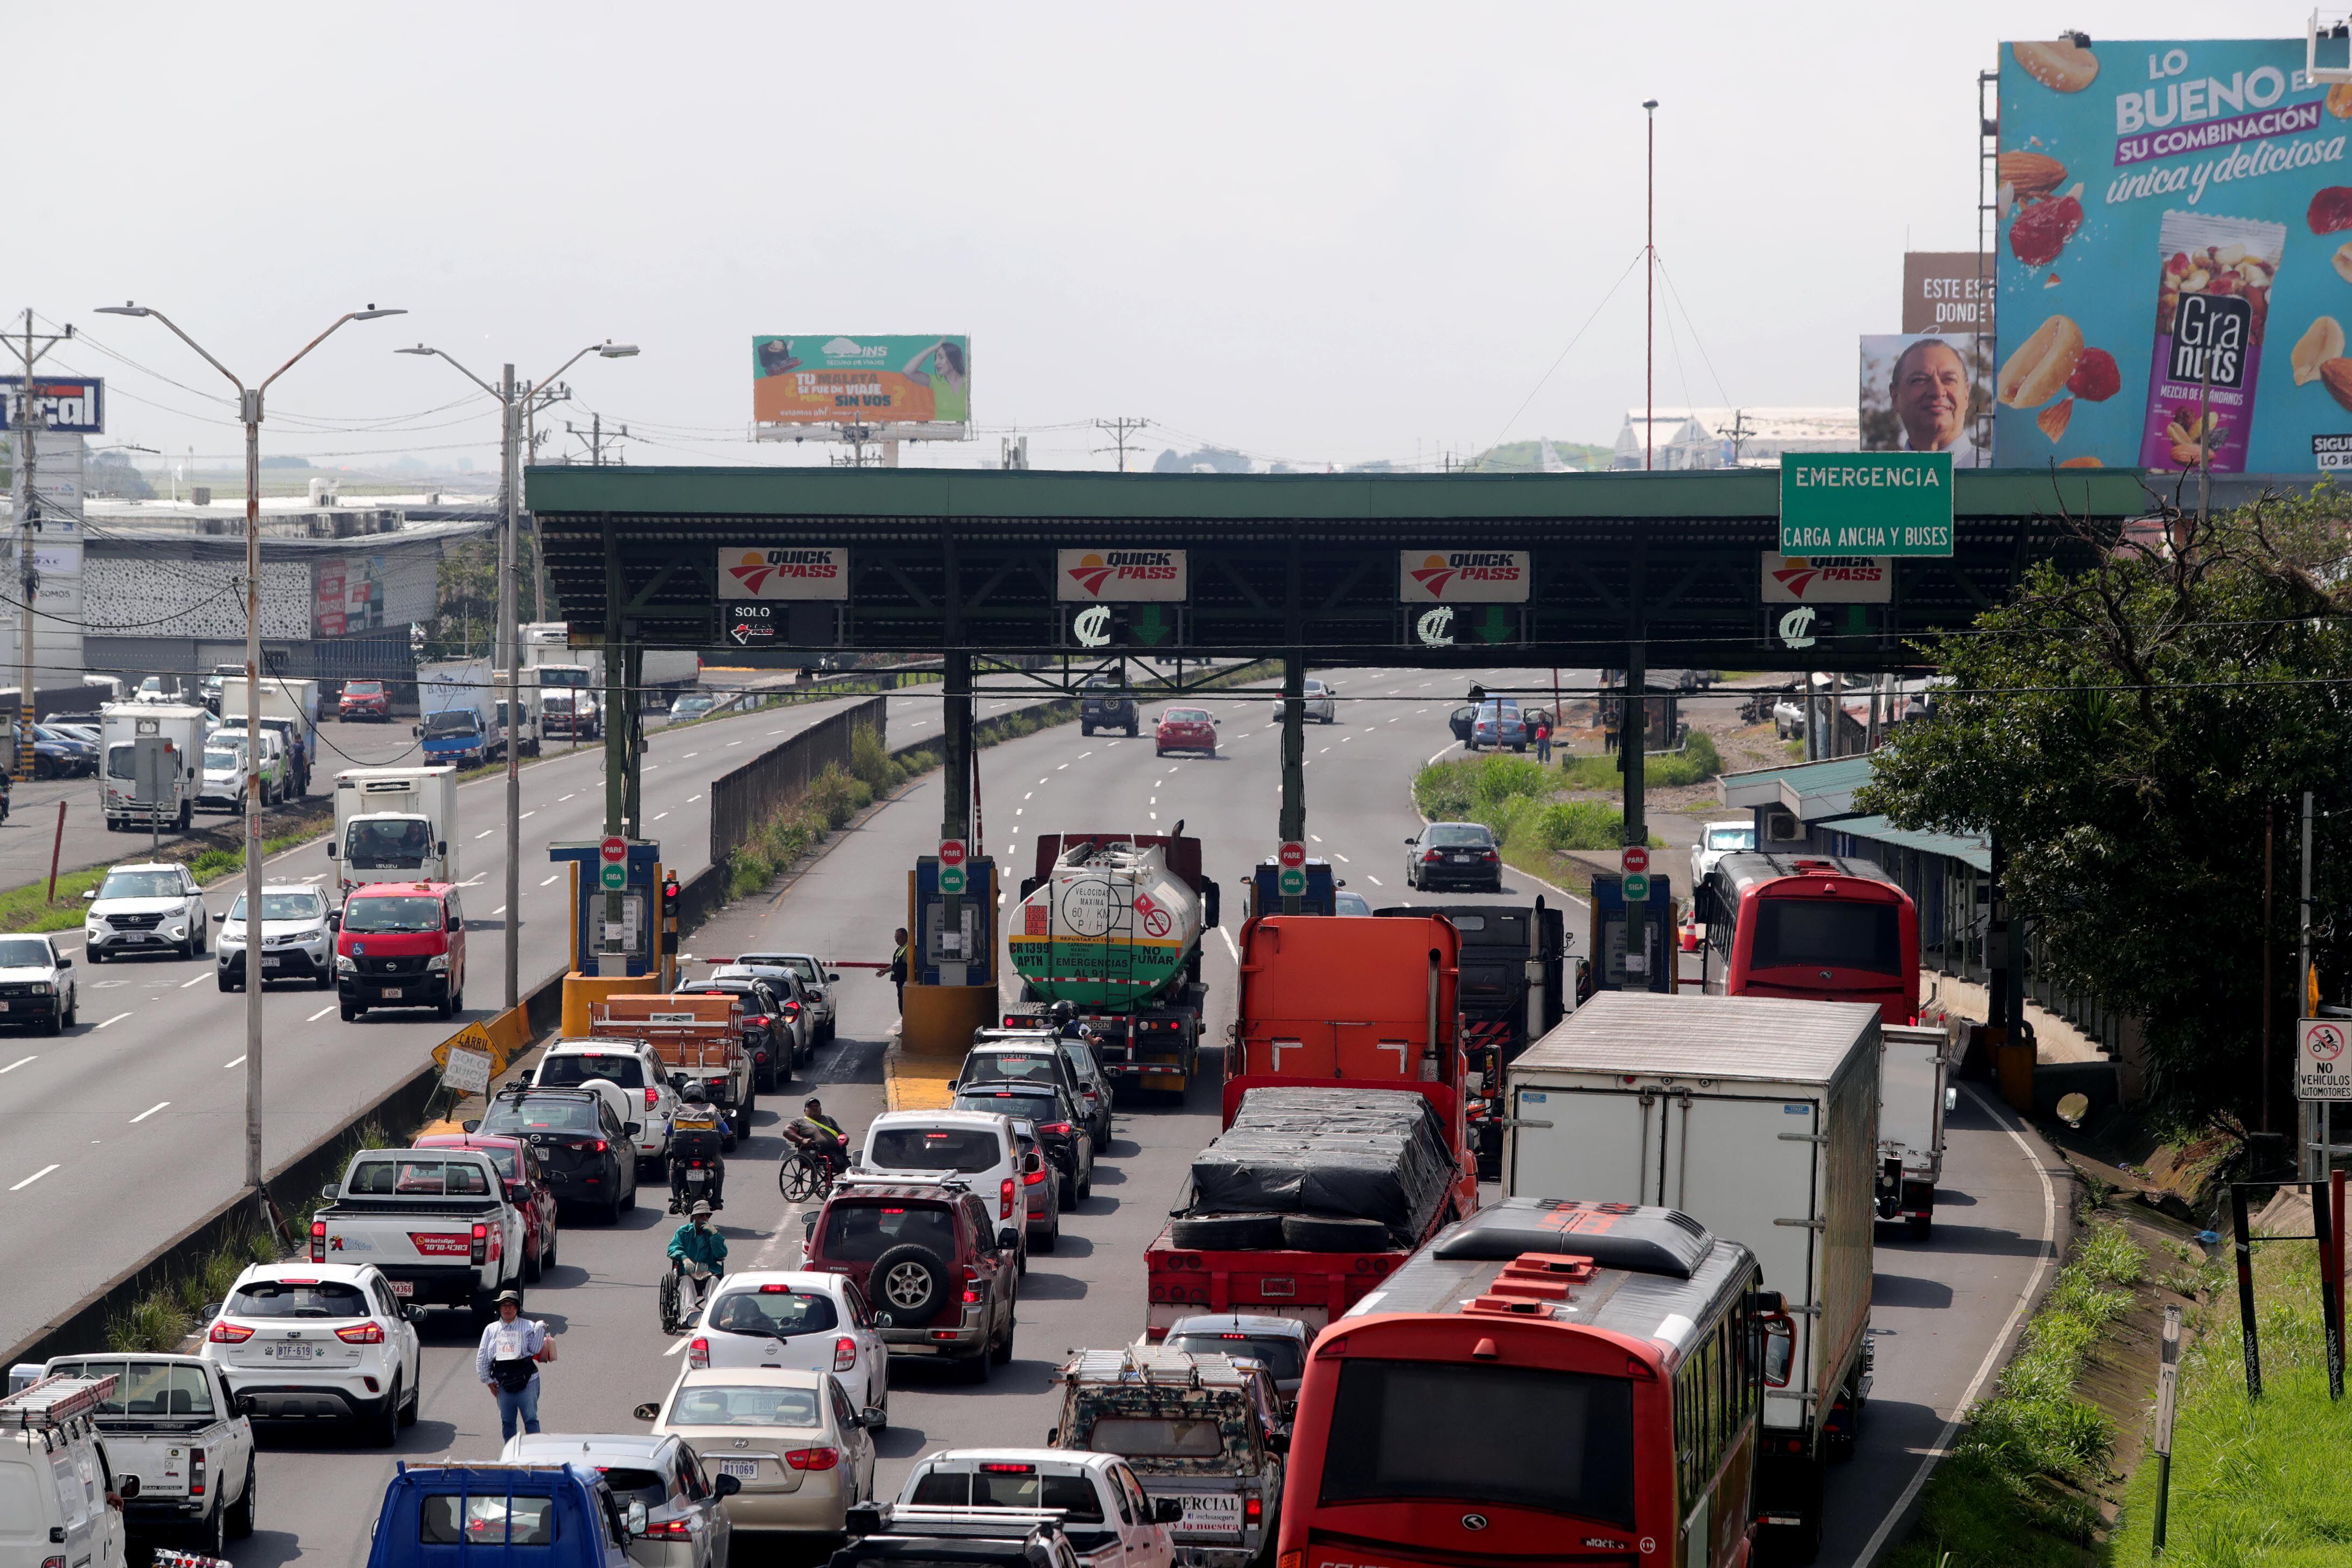 Los diputados enfatizaron que el peaje de Río Segundo genera un tapón importante que complica el tránsito por la ruta 1, pese a la crisis de los embotellamientos en el país. Foto: Alonso Tenorio.